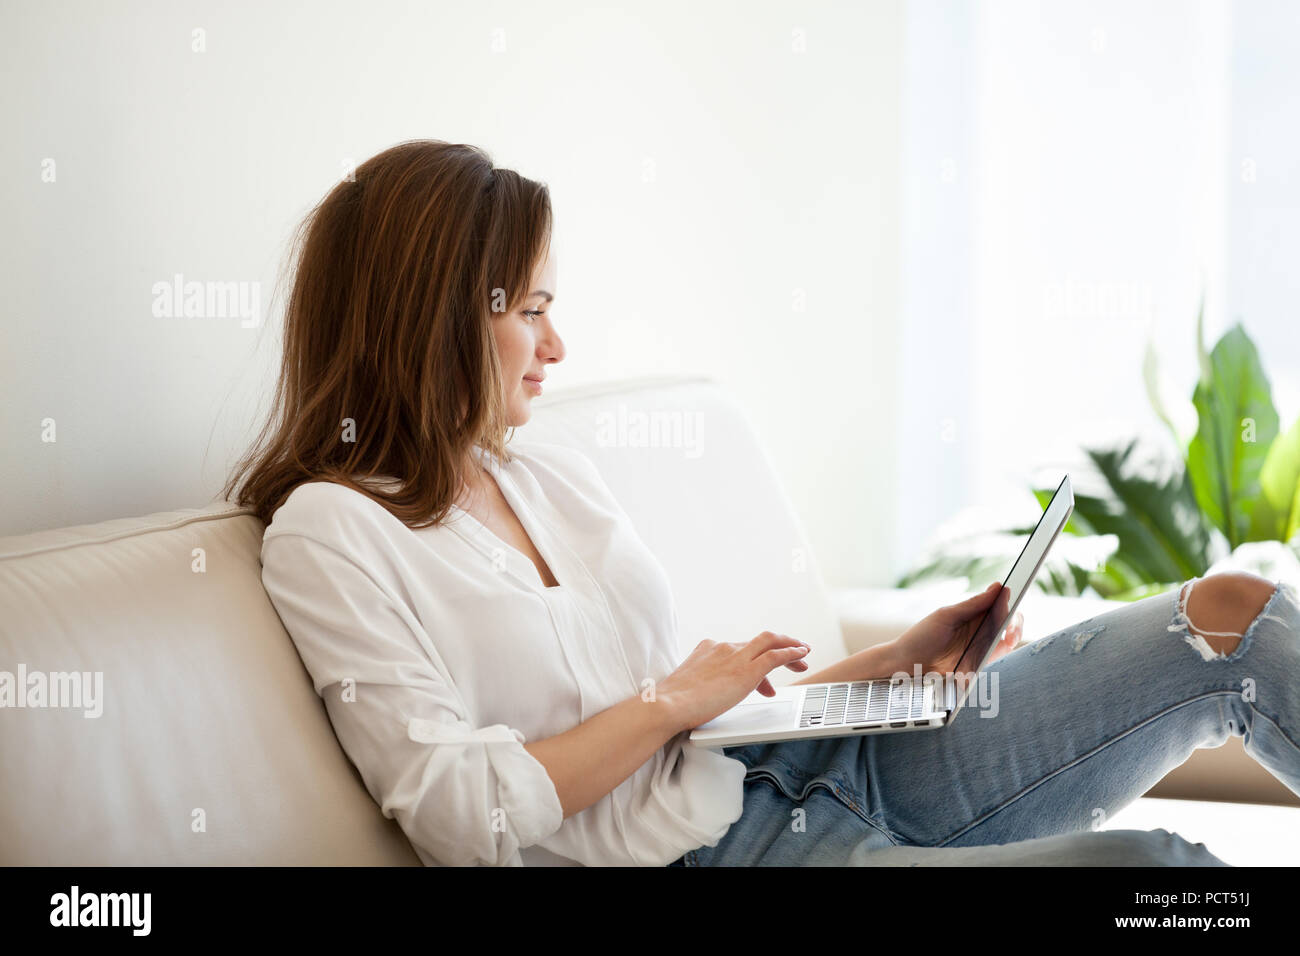 Smiling girl browsing web au cours de week-end à la maison Banque D'Images